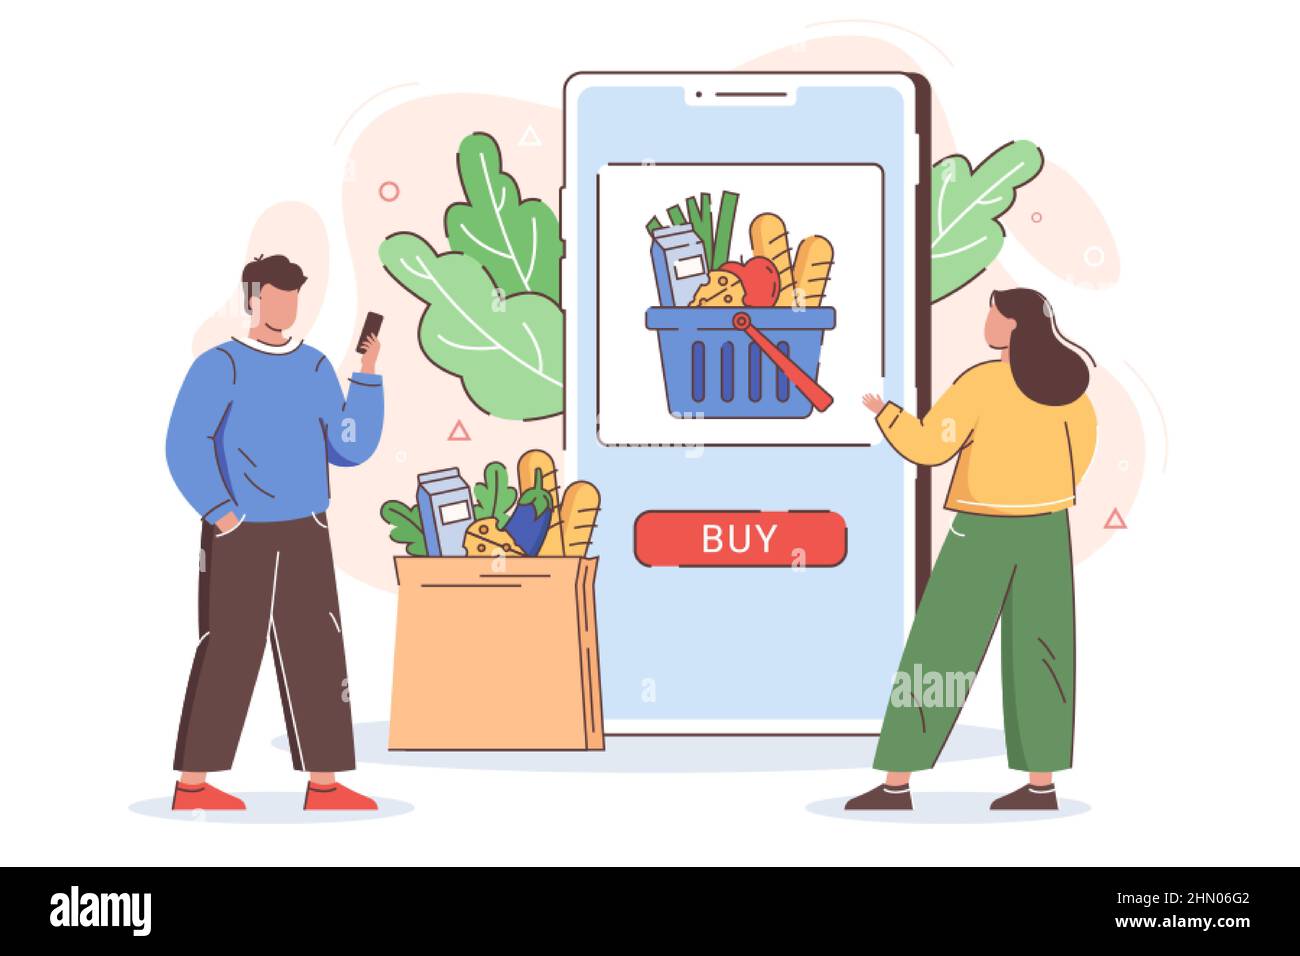 Flat Menschen bestellen Lebensmittel online. Einkaufen über mobile  Anwendung. Internet-Einkäufe mit Lieferung nach Hause aus Supermarkt.  Smartphone-Bildschirm mit Kauftaste und Korb voller Produkte  Stock-Vektorgrafik - Alamy